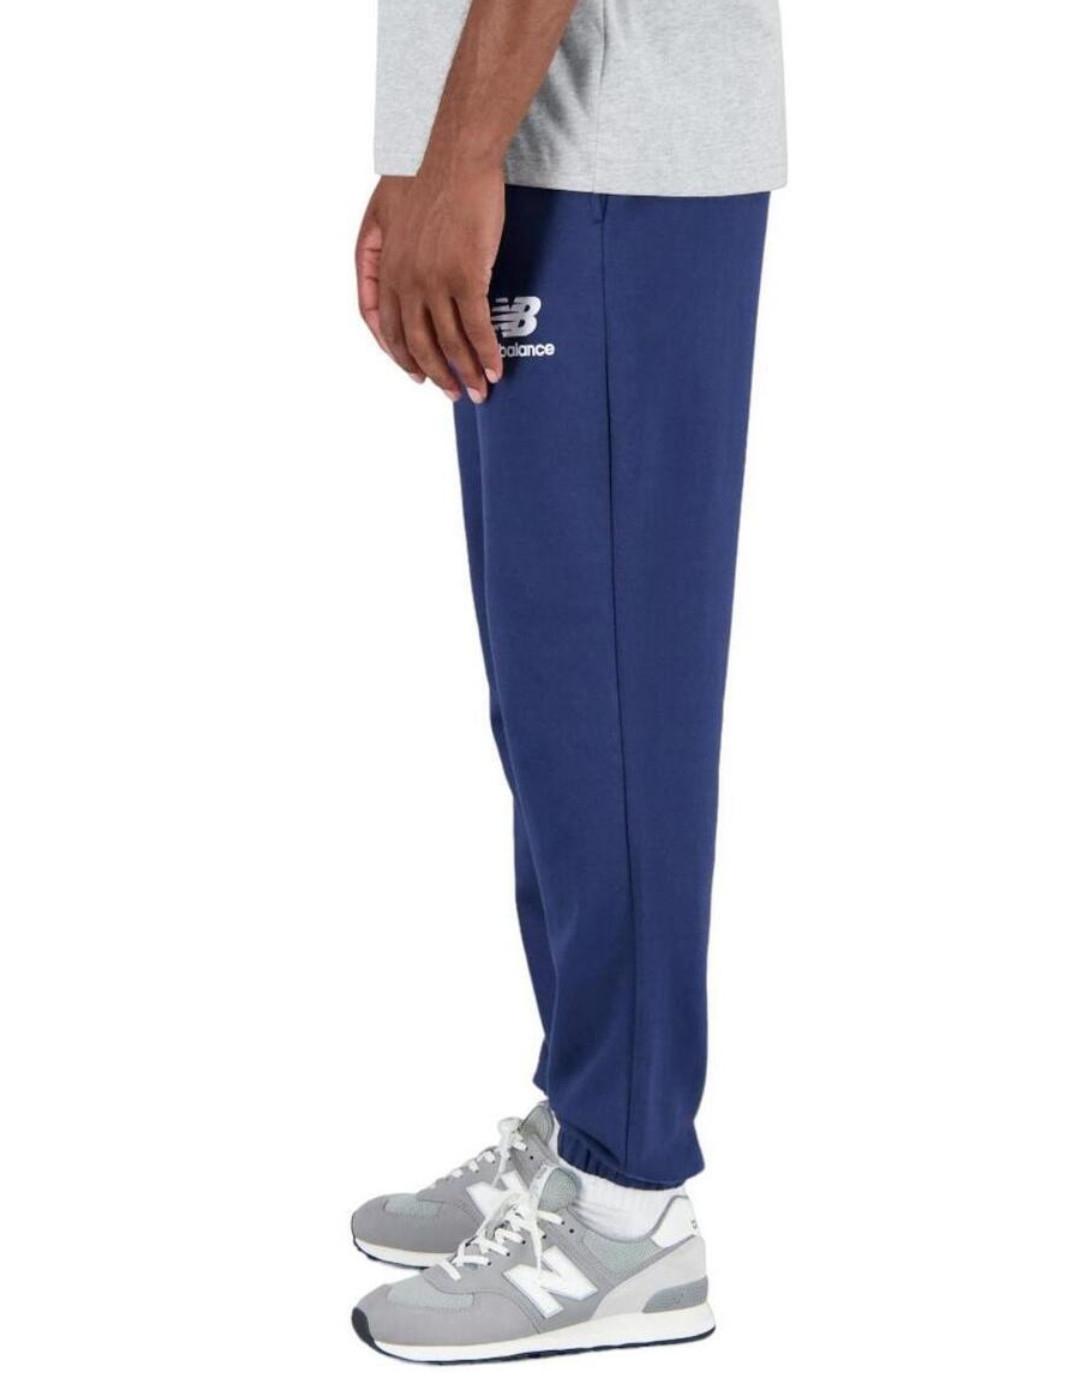 Pantalón New Balance running azul corte holgado de hombre